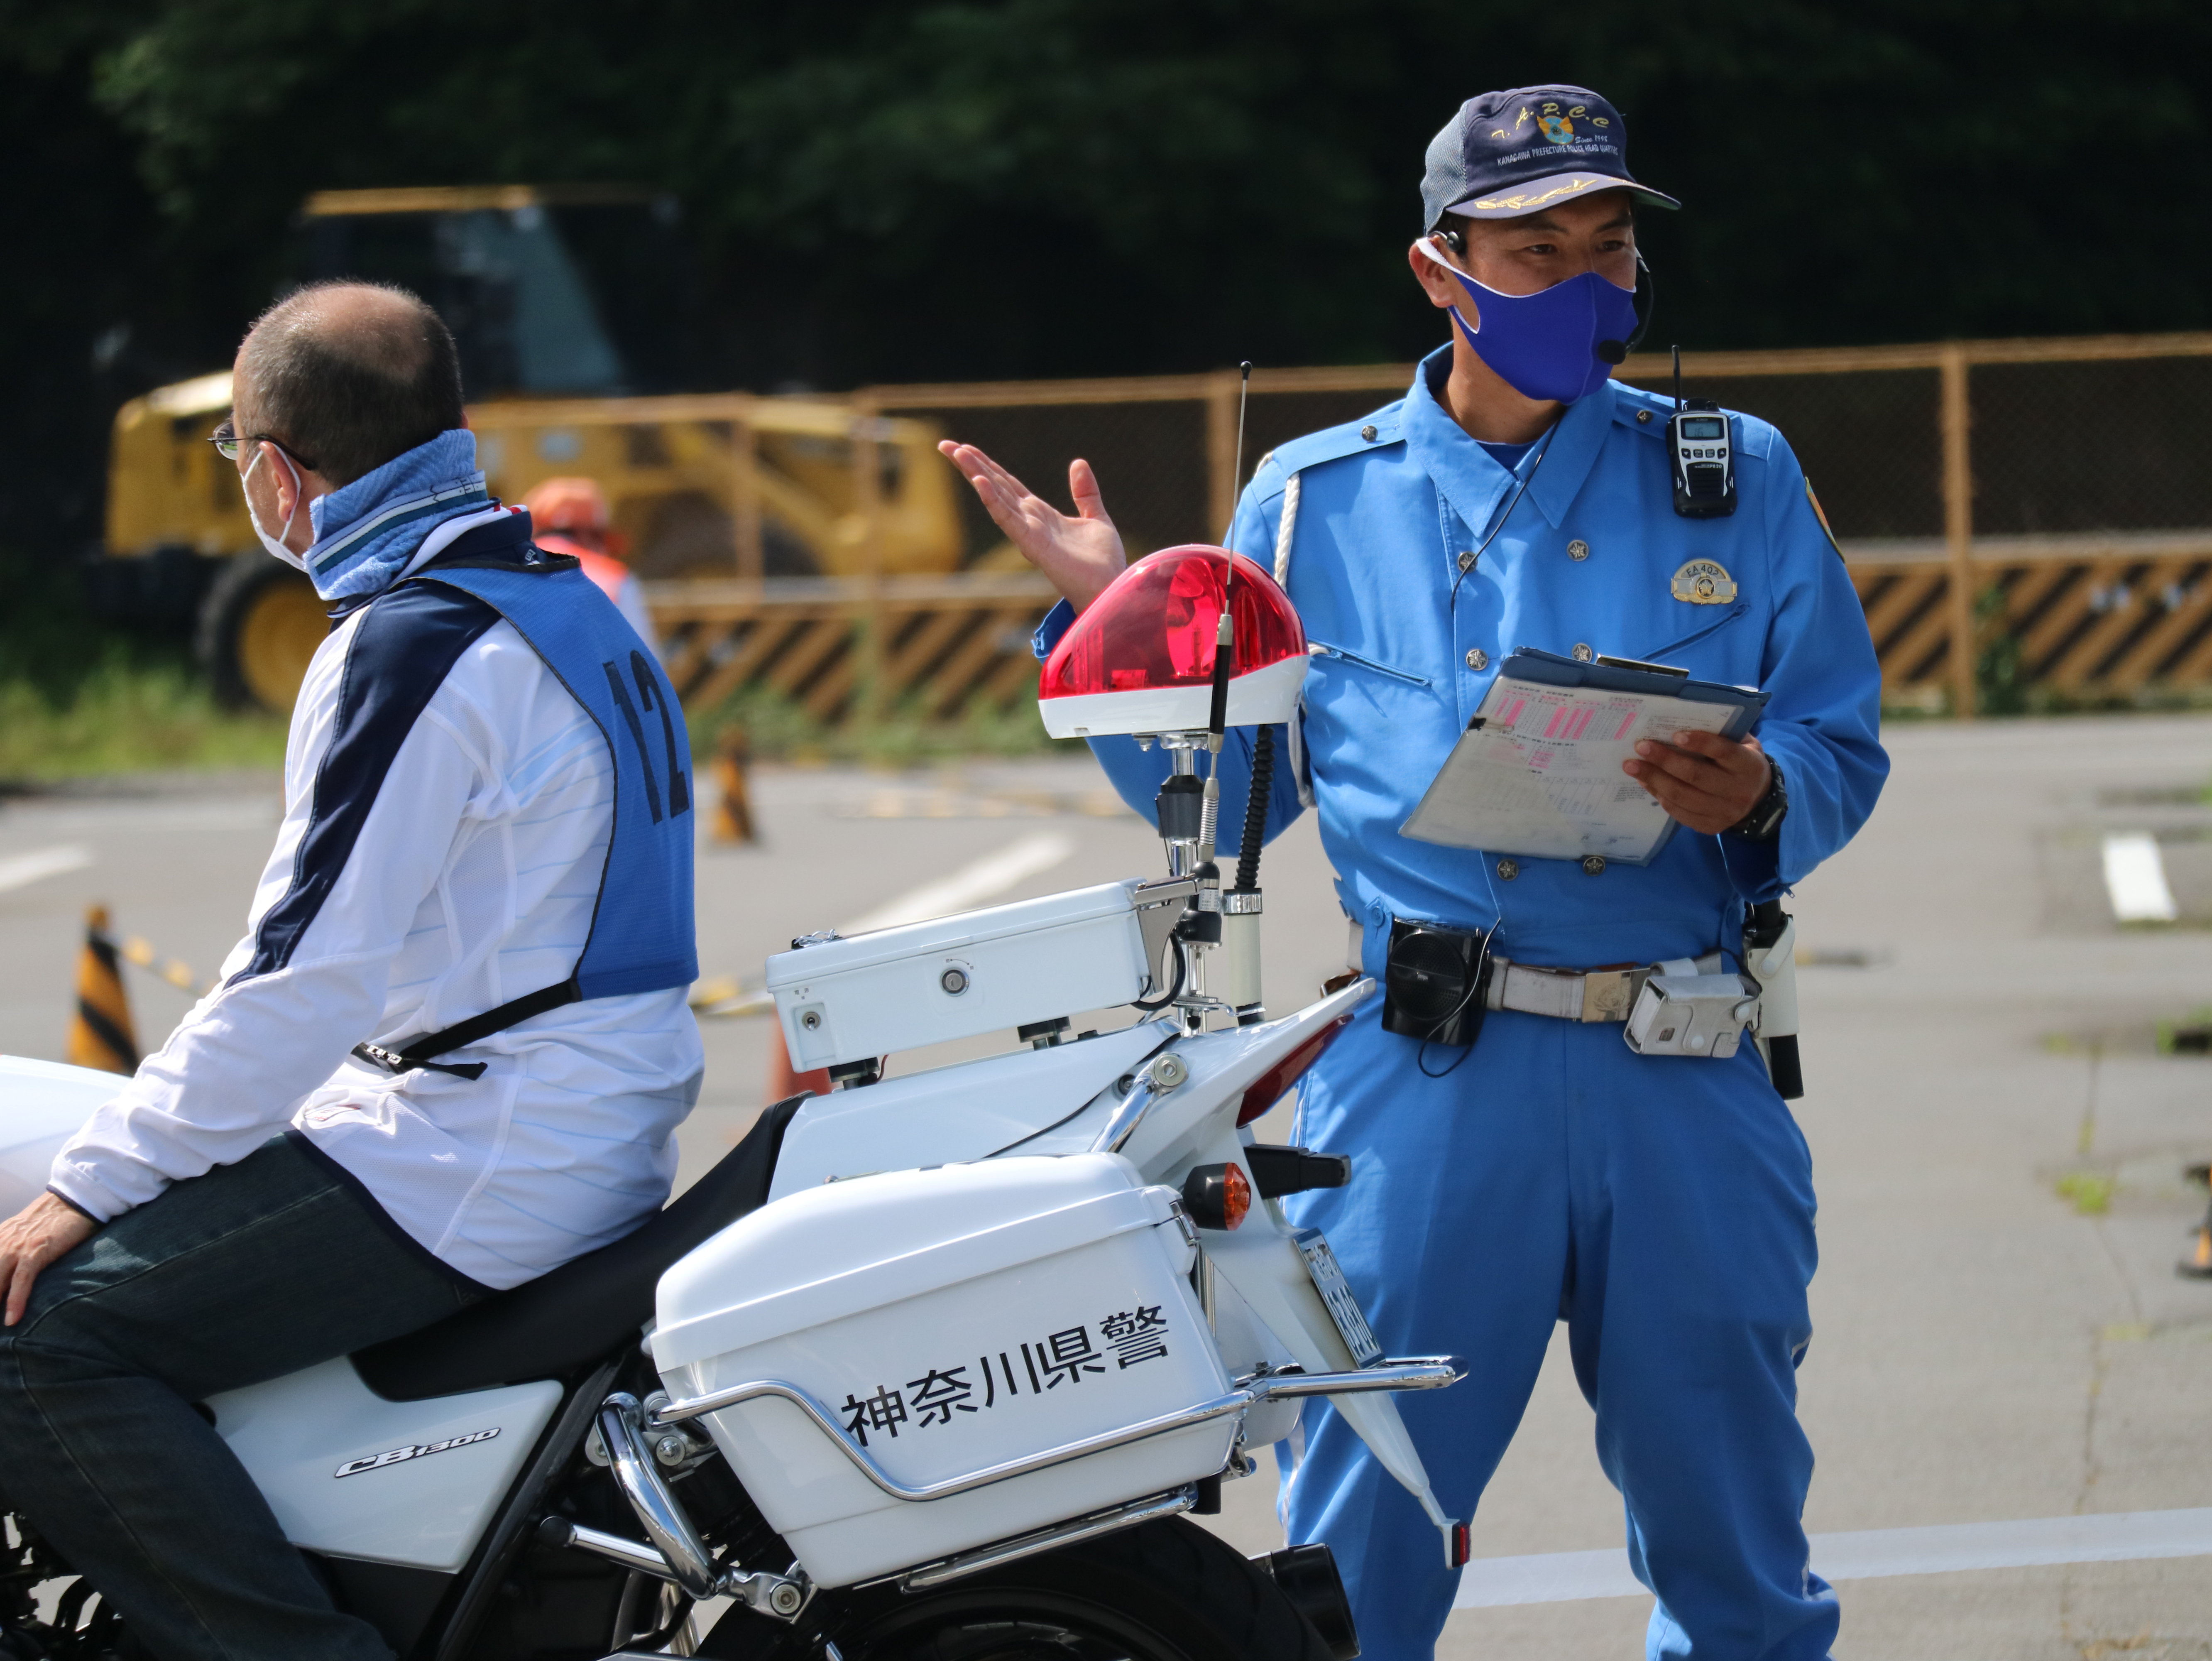 また、講習後には神奈川県警の白バイ隊員から交通安全啓発の具体的なお話もありました。